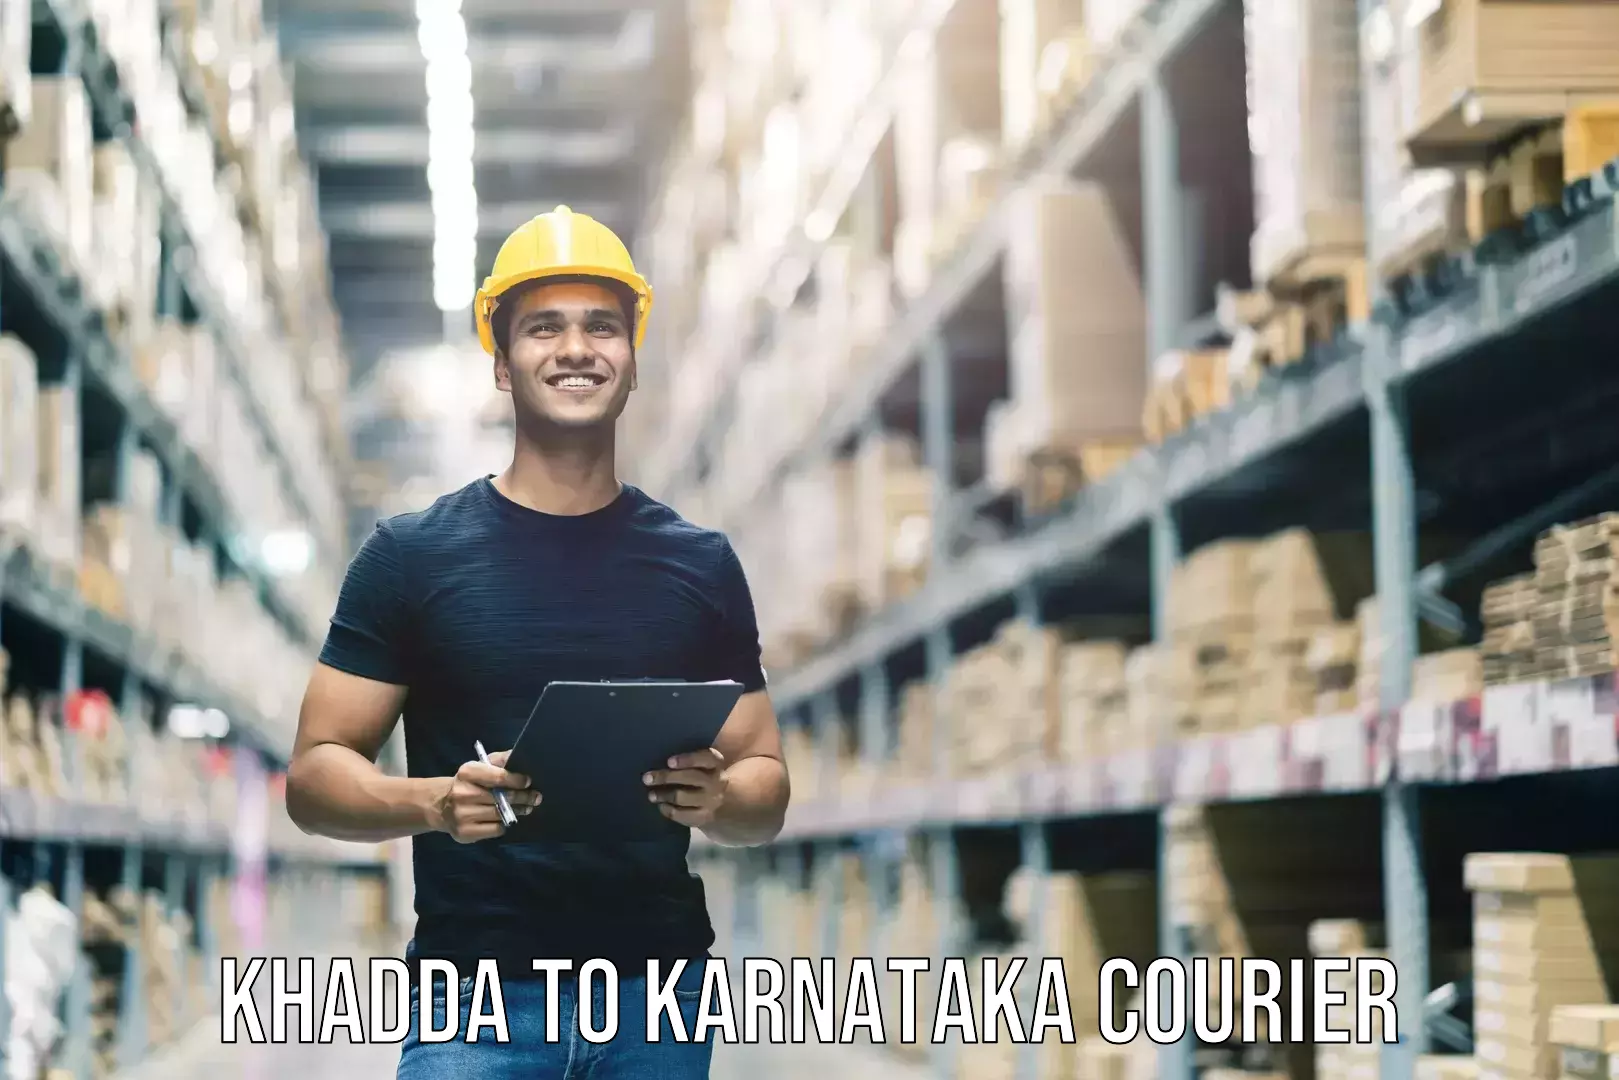 Baggage shipping advice Khadda to Karnataka